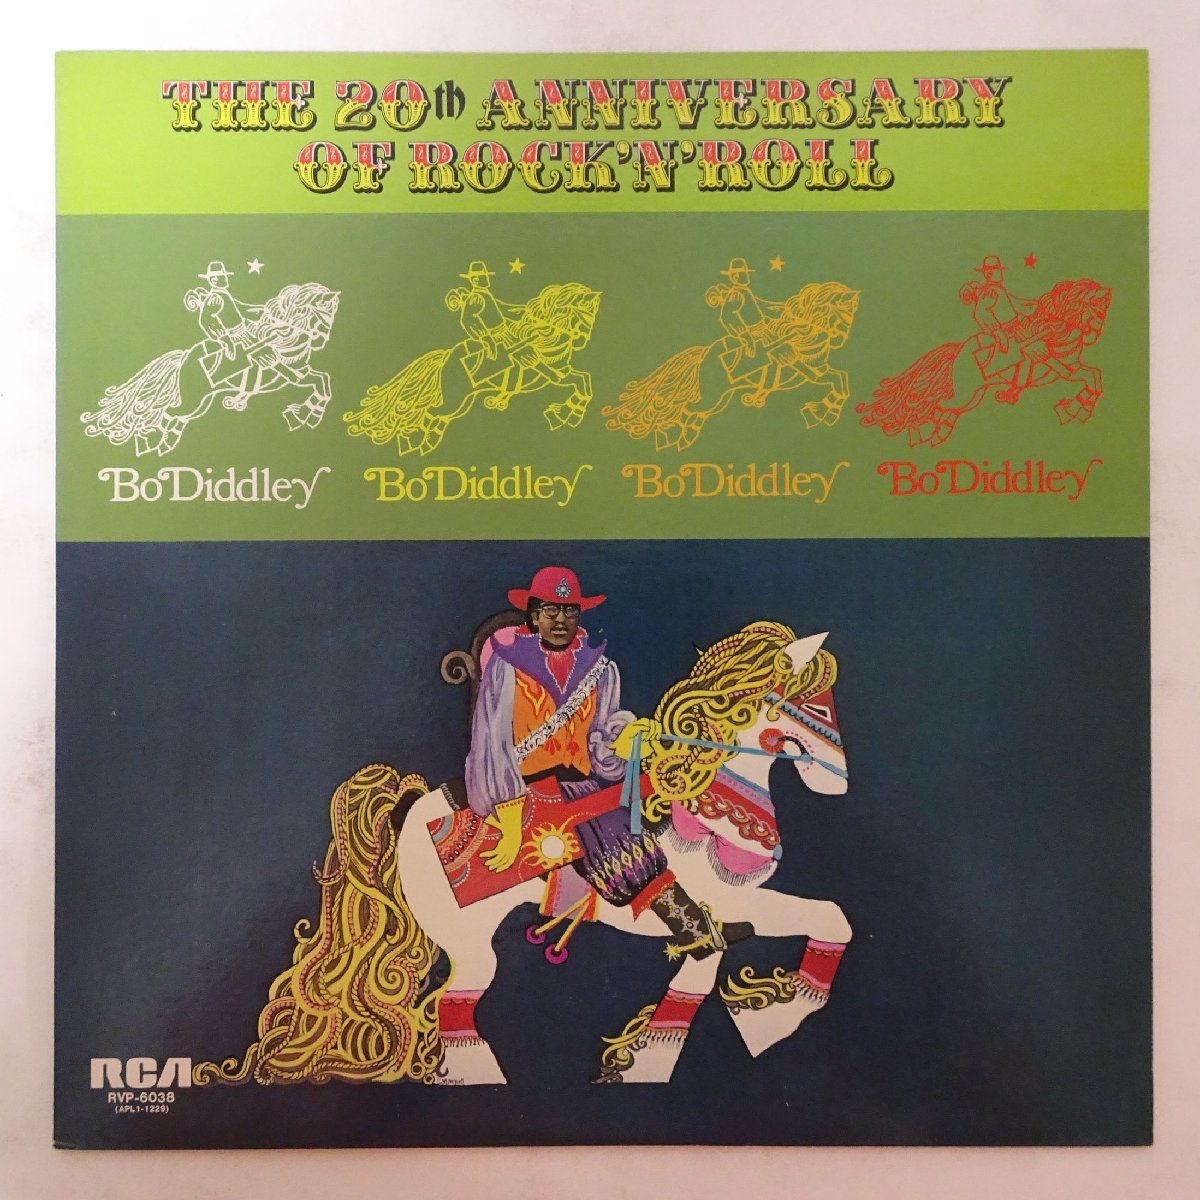 10019963;【美盤/国内盤】Bo Diddley / The 20th Anniversary Of Rock 'N' Roll 栄光のロックン・ロール・ジャム_画像1